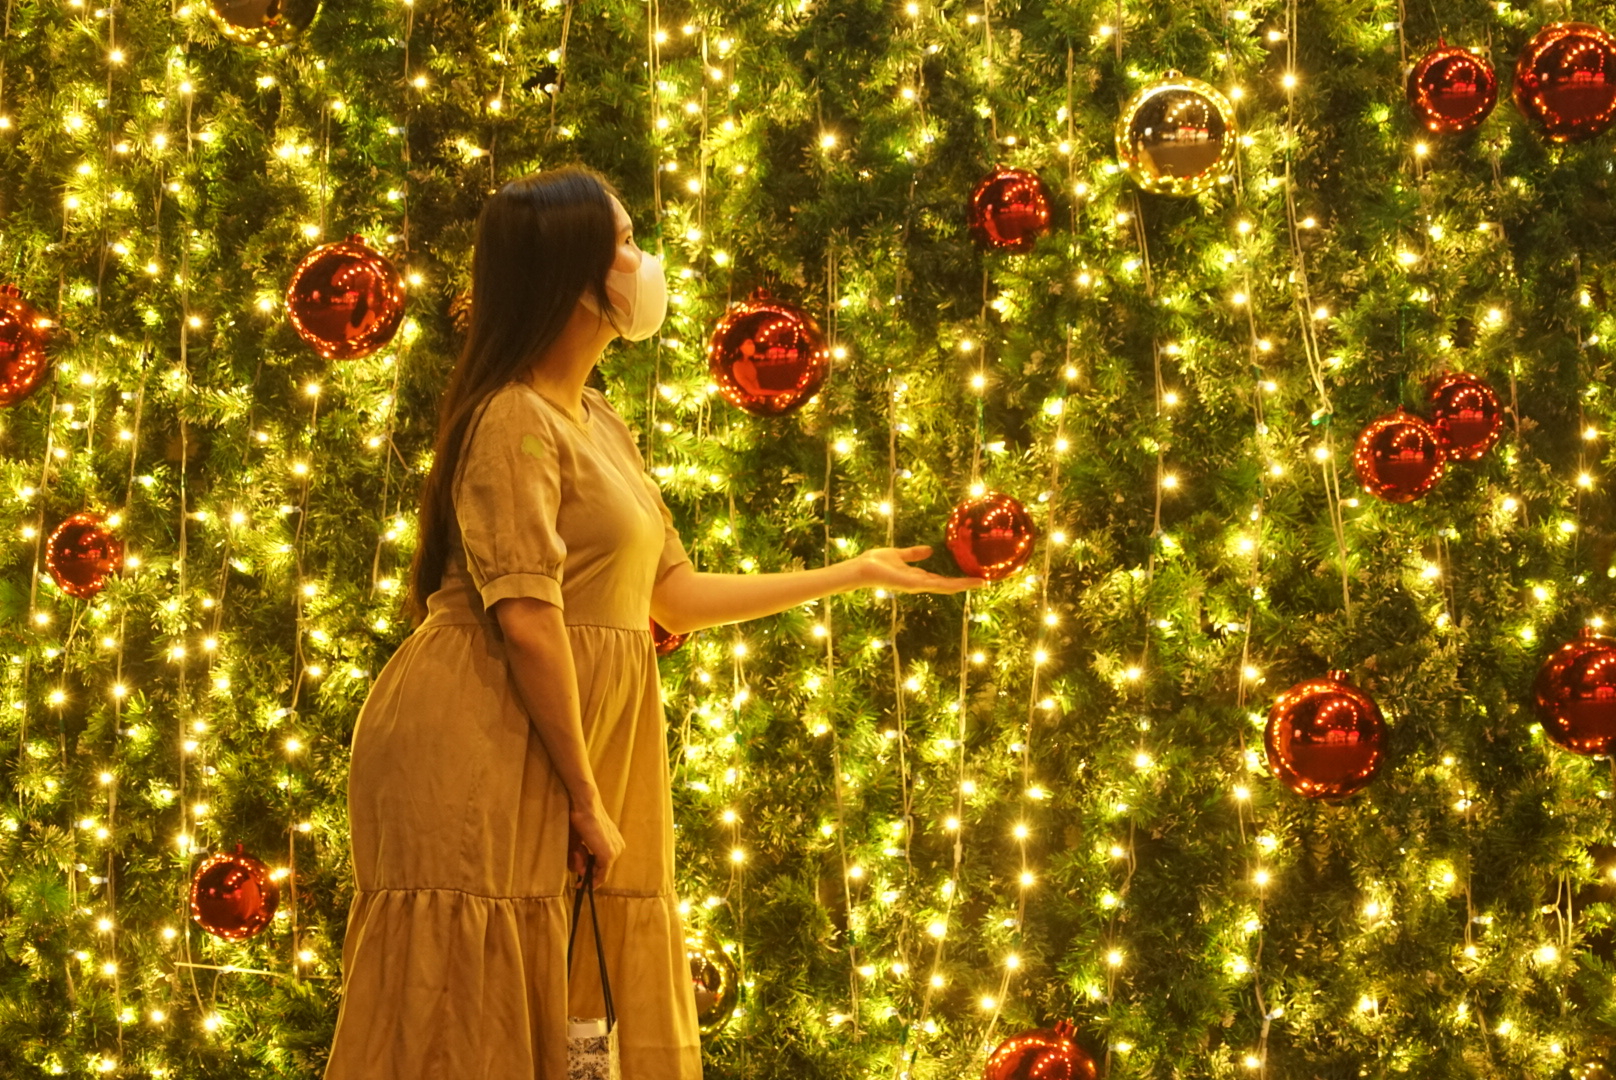 Cây thông Noel luôn là biểu tượng vô cùng quen thuộc mỗi dịp Giáng sinh. Hãy đến và chiêm ngưỡng sự độc đáo của chúng tôi khi trang trí một cây thông Noel đầy sáng tạo và tinh tế. Bạn sẽ cảm thấy đón chờ những niềm vui đầy ấm áp trong mùa lễ hội này.